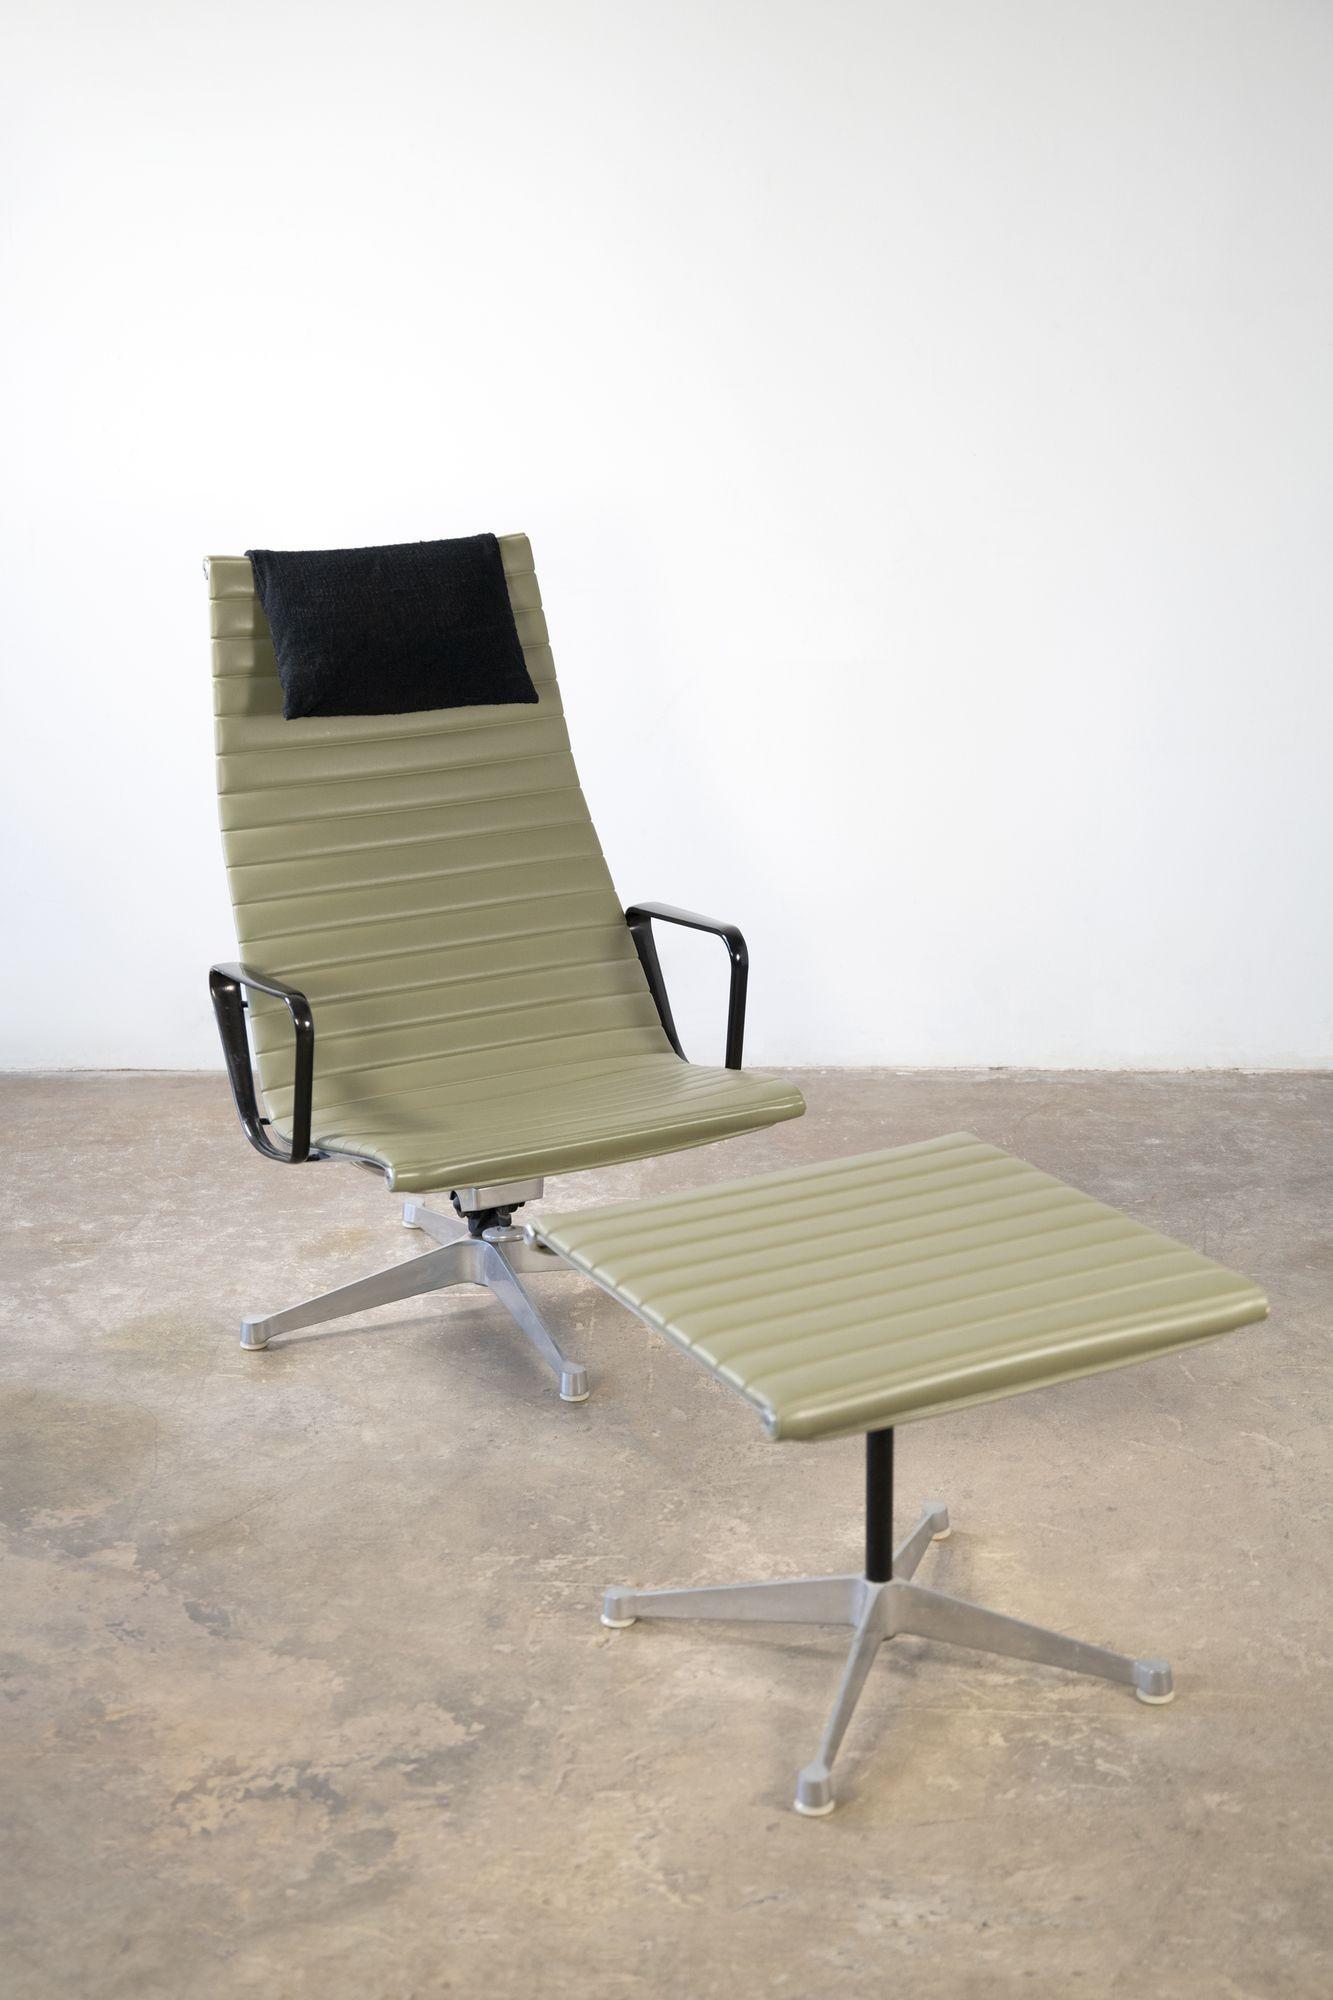 Charles und Ray Eames 'Aluminum Group' Sessel Modell EA124 und Ottomane Modell EA125.
Dies ist ein frühes Exemplar aus der Produktion, das nur einen Besitzer hat und sehr gut erhalten ist. Das Moosgrün bildet einen schönen Kontrast zu den schwarzen